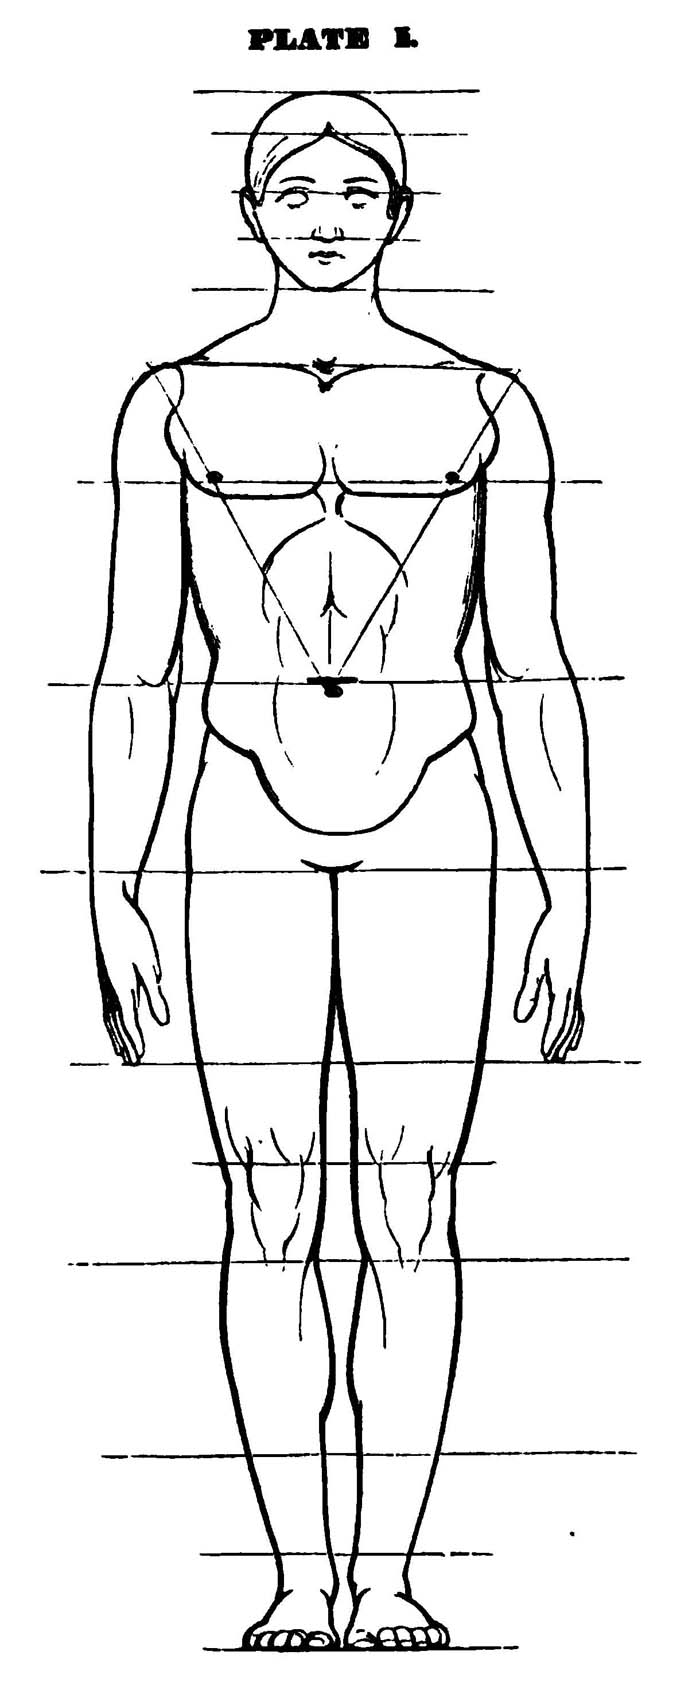 How To Draw A Human Body Sketch imgAbigail